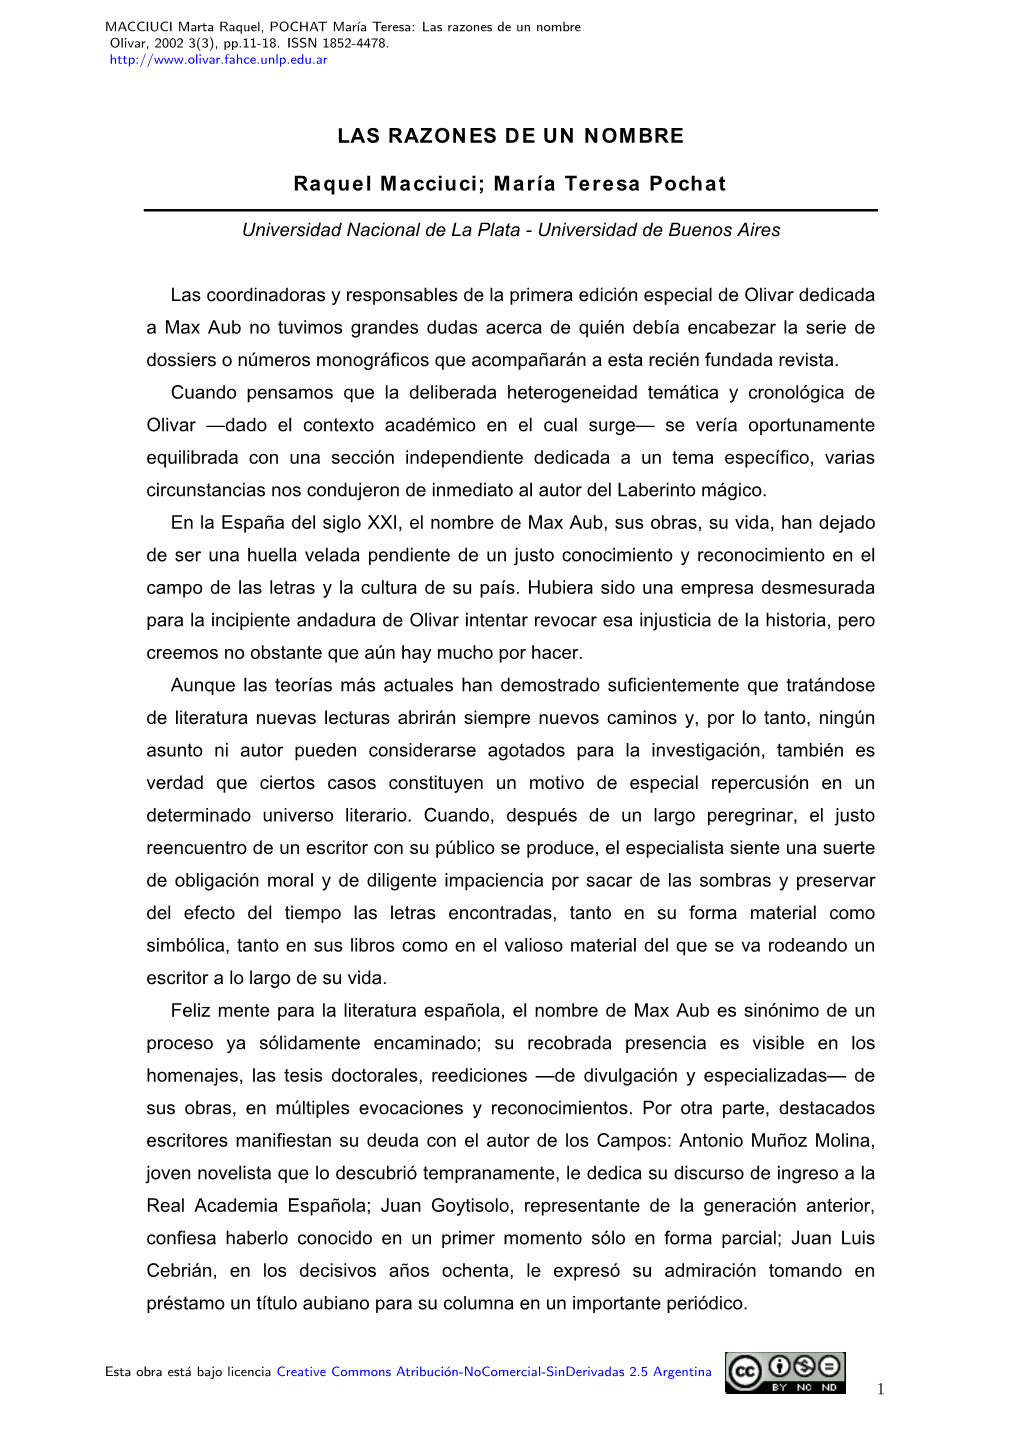 Las Razones De Un Nombre Olivar, 2002 3(3), Pp.11-18